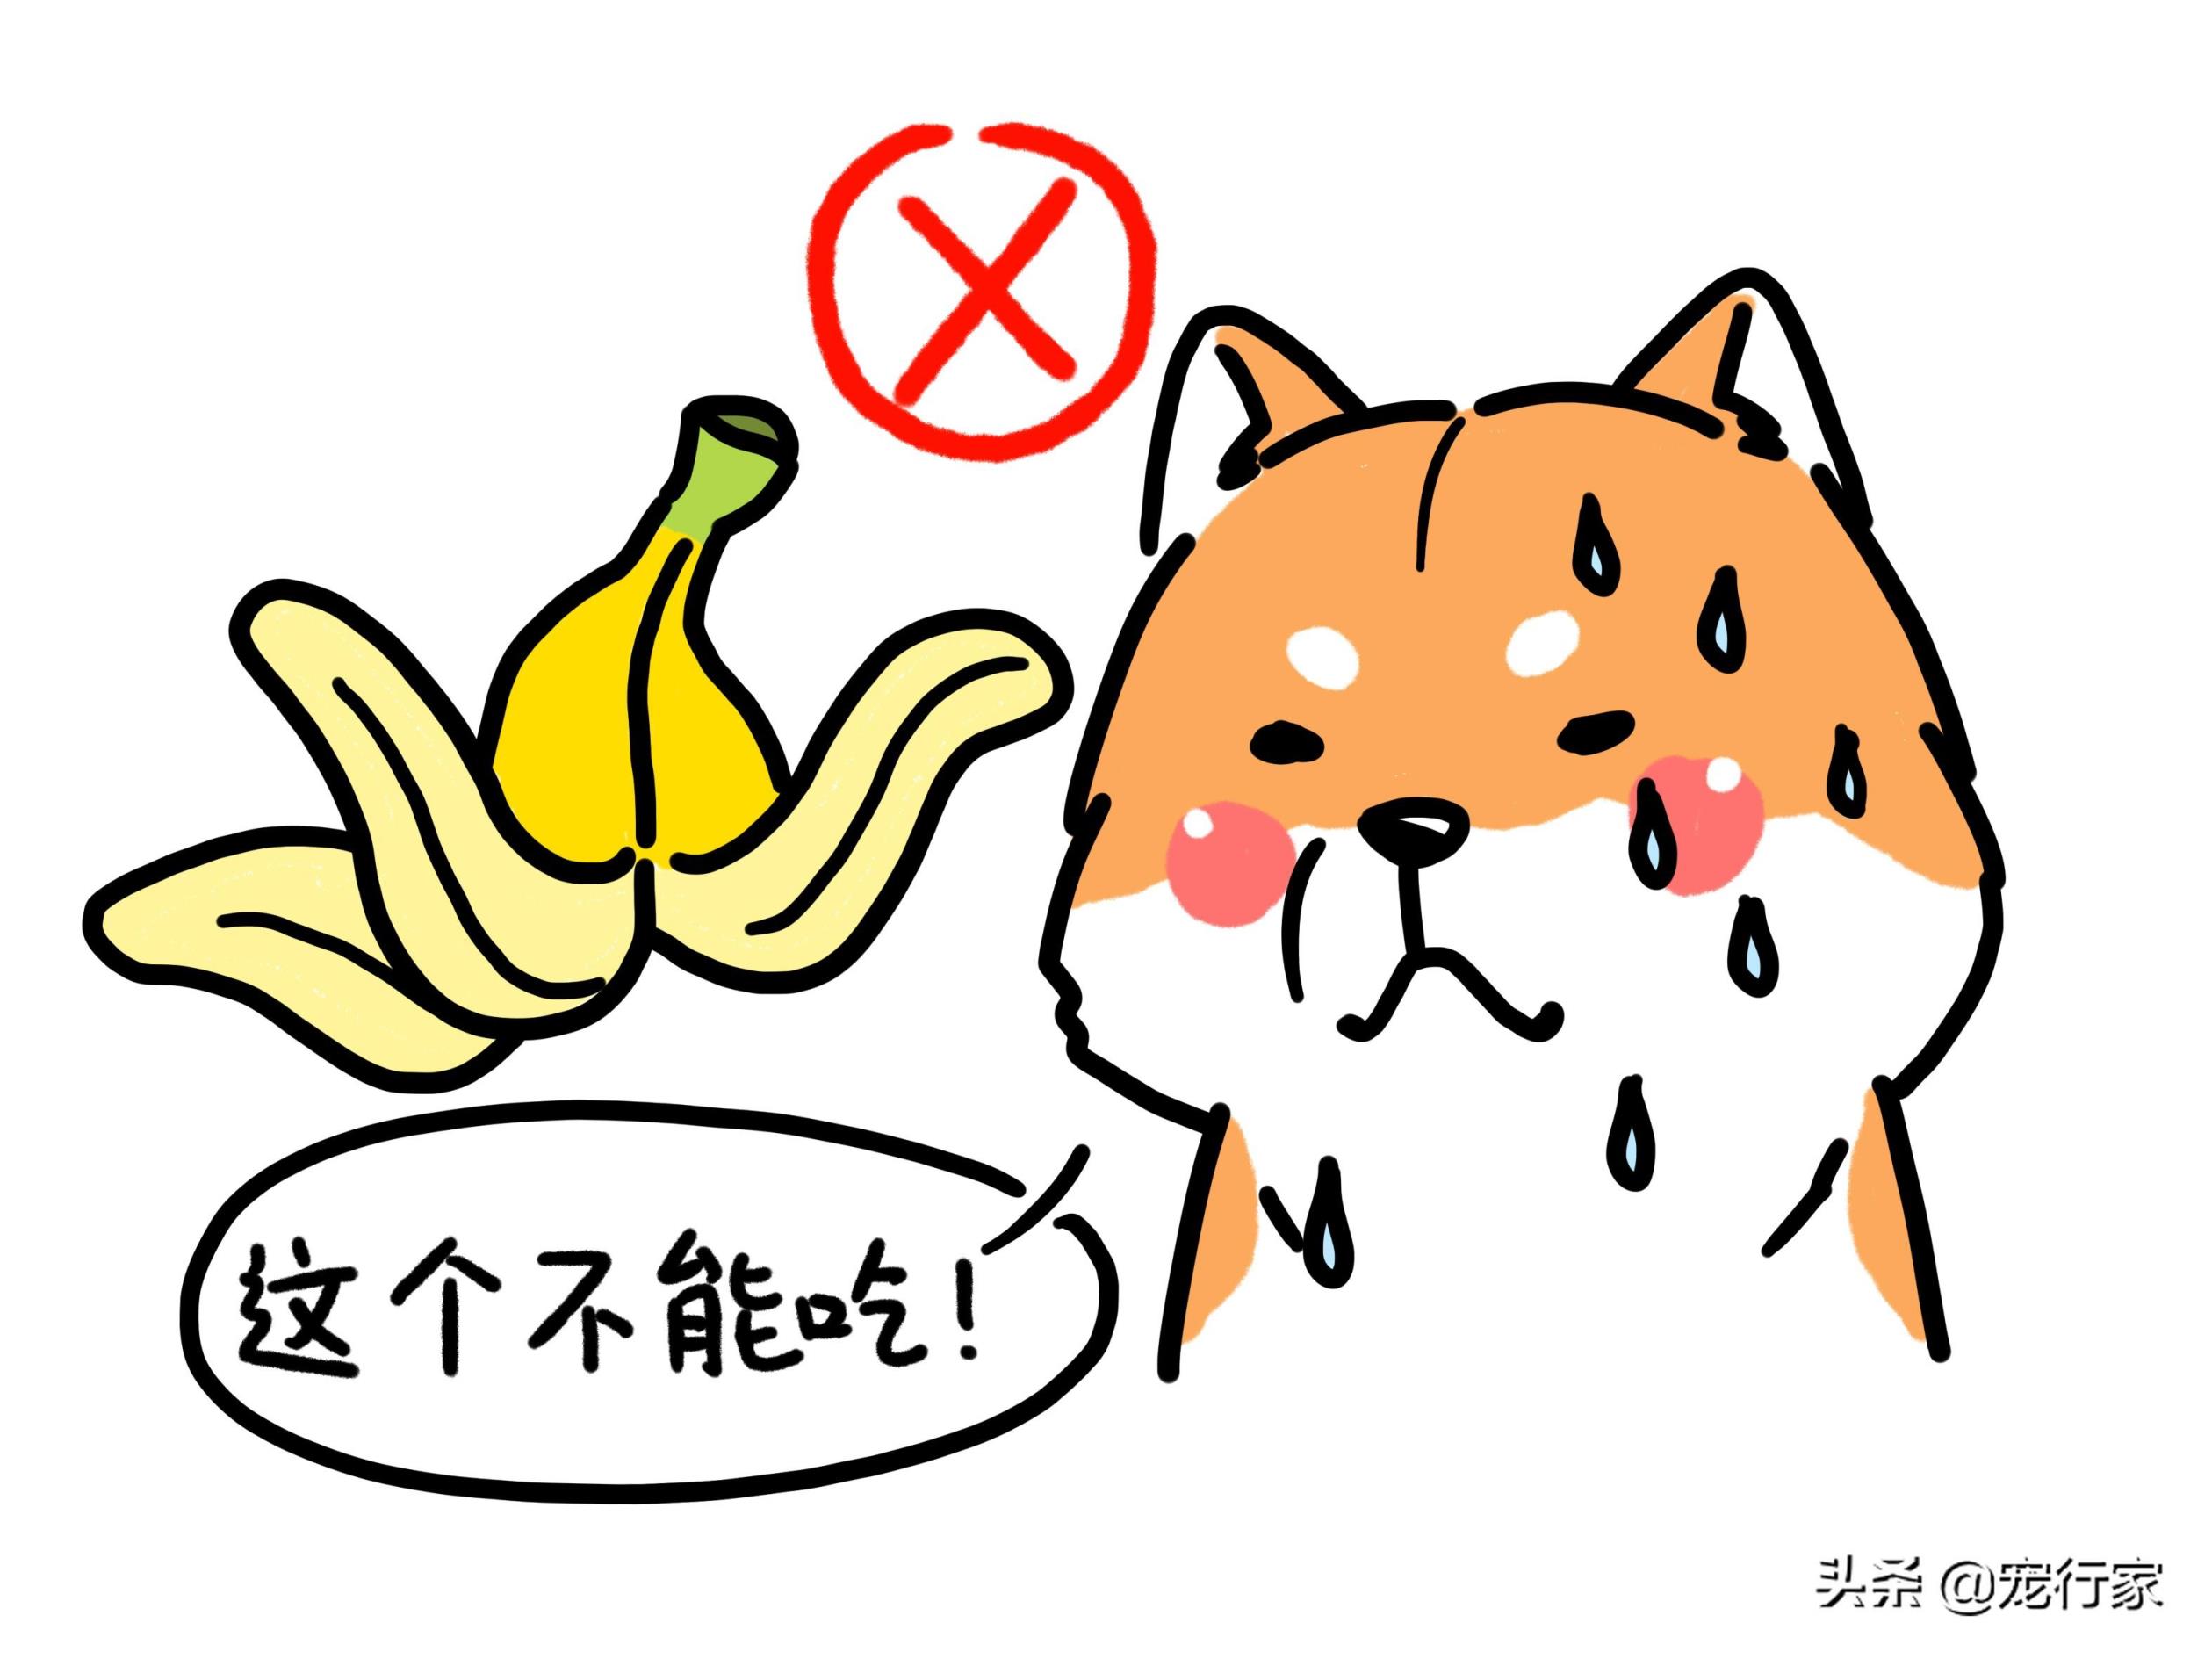 香蕉狗可以吃吗,狗吃香蕉没事吧